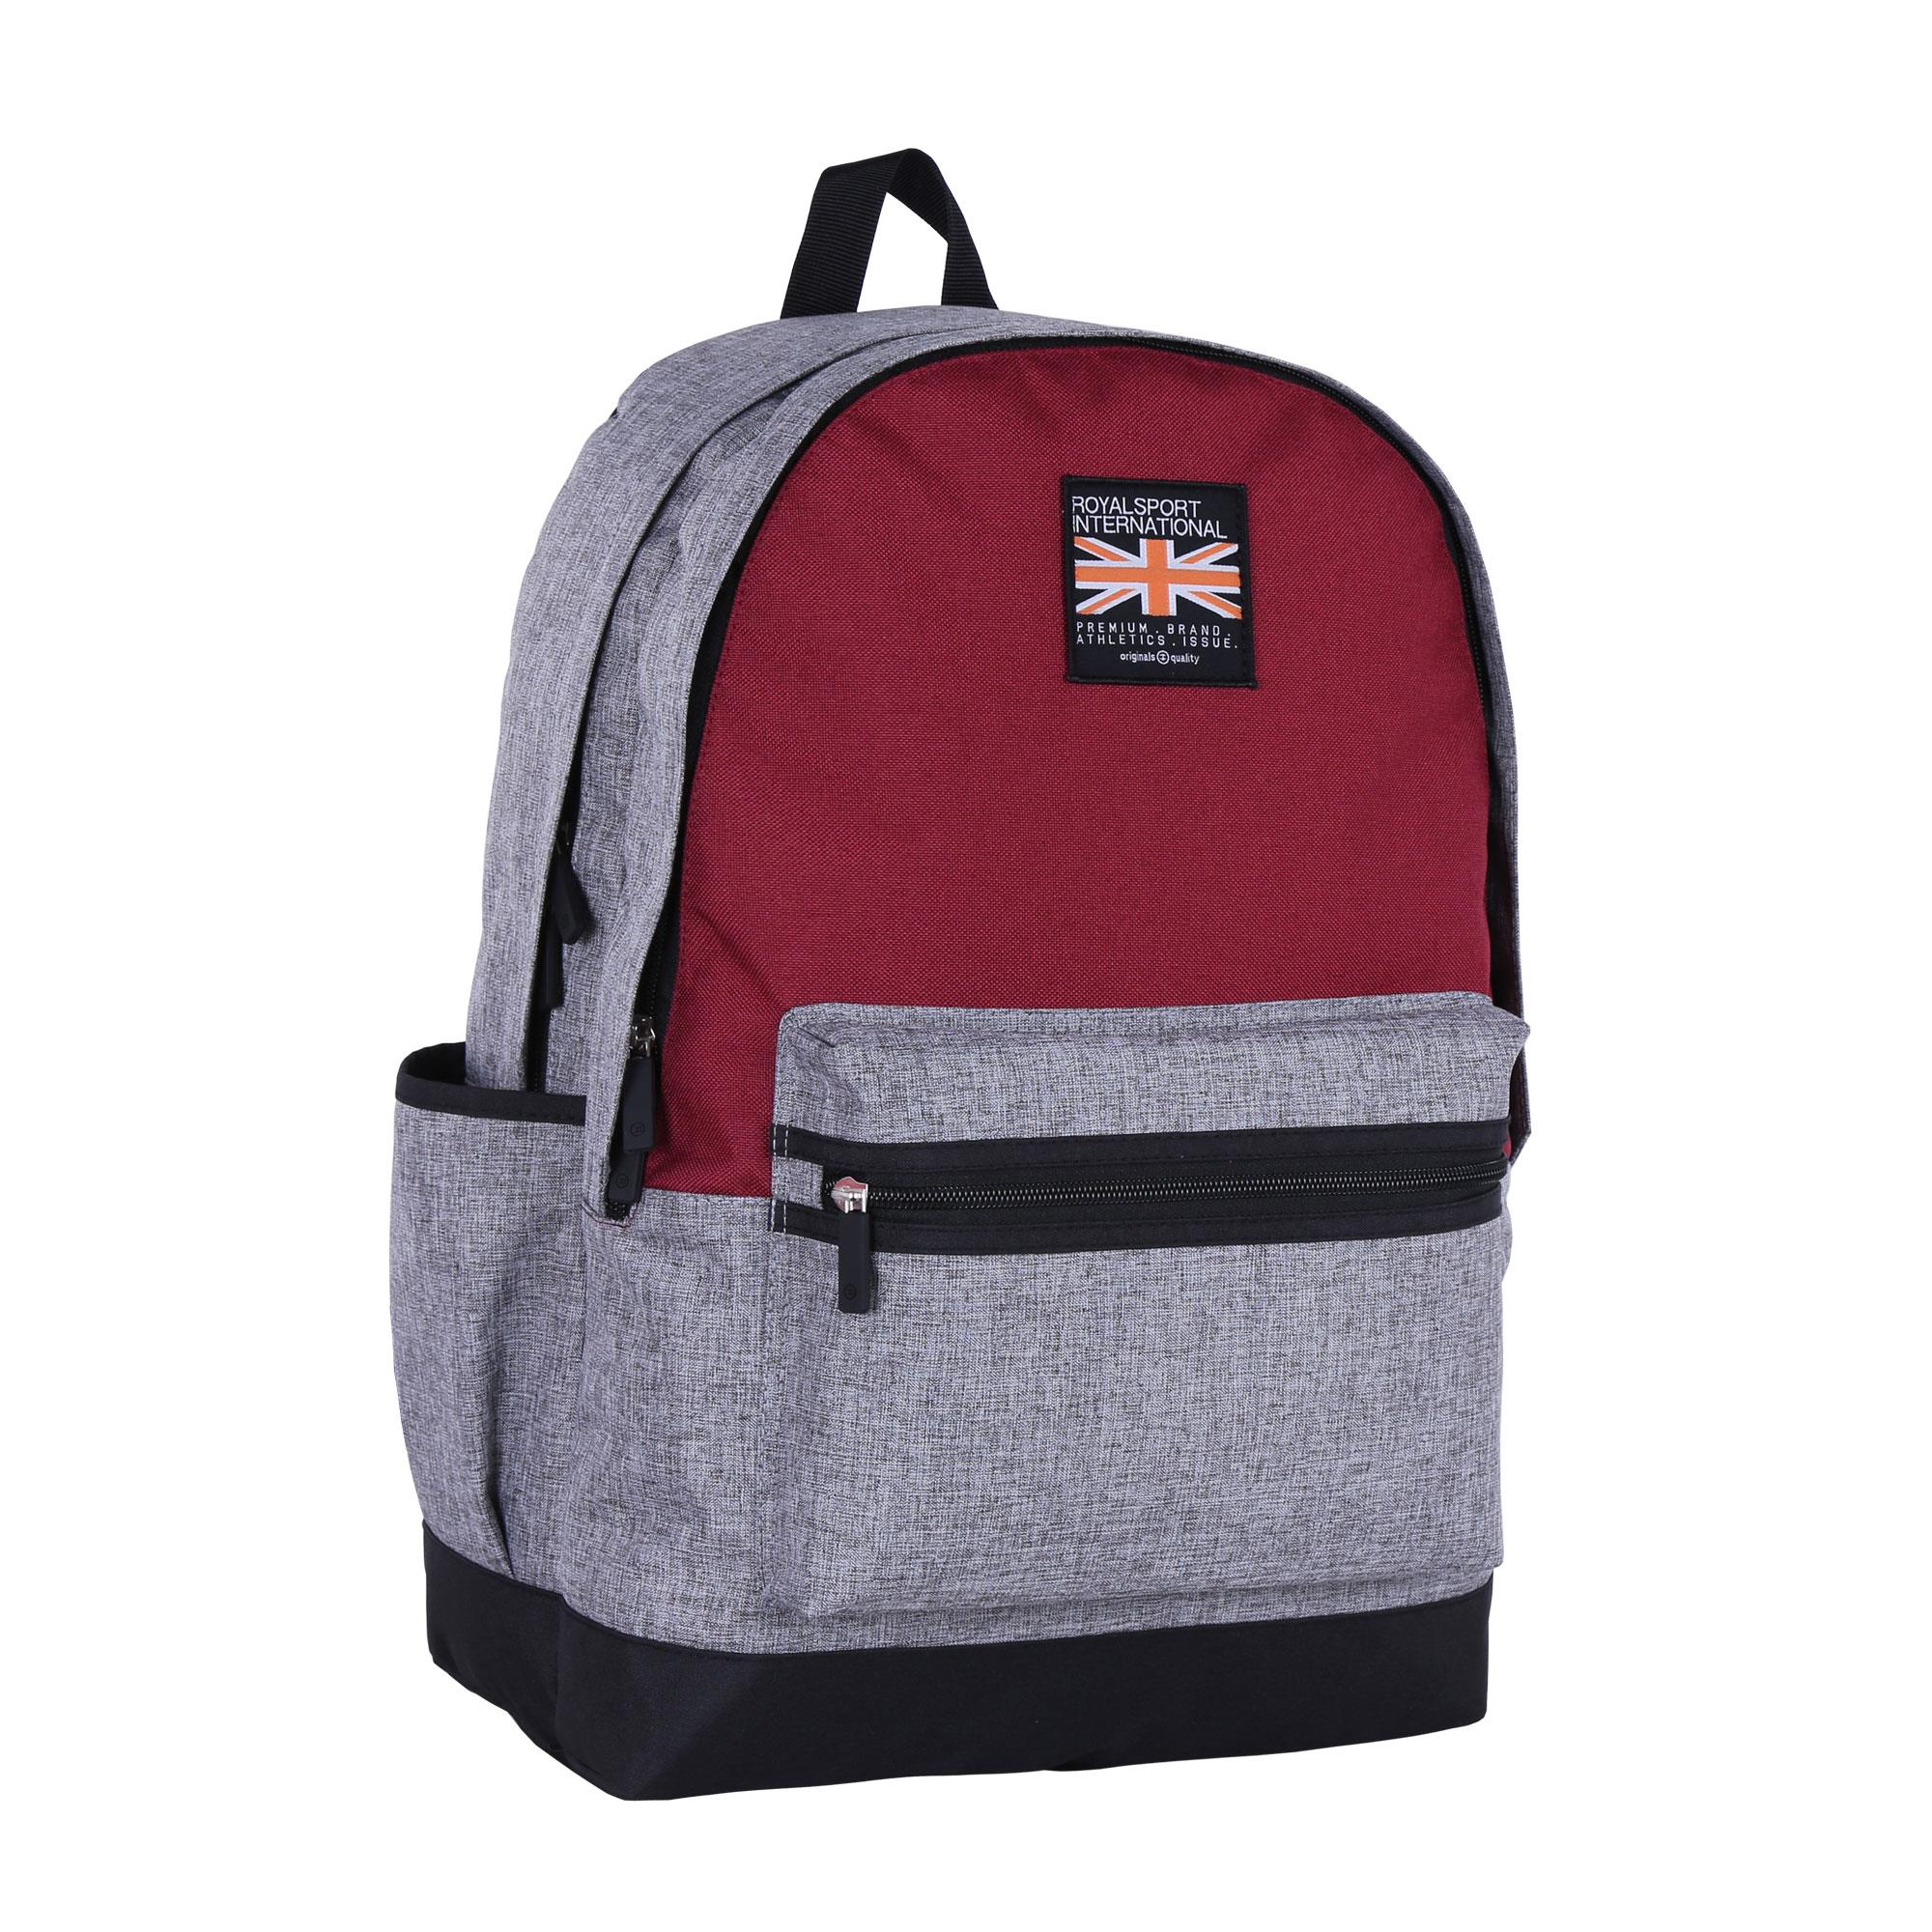 2019 wholesale price Mélange Backpack Supplier -
 B1062-008 Melange – Herbert